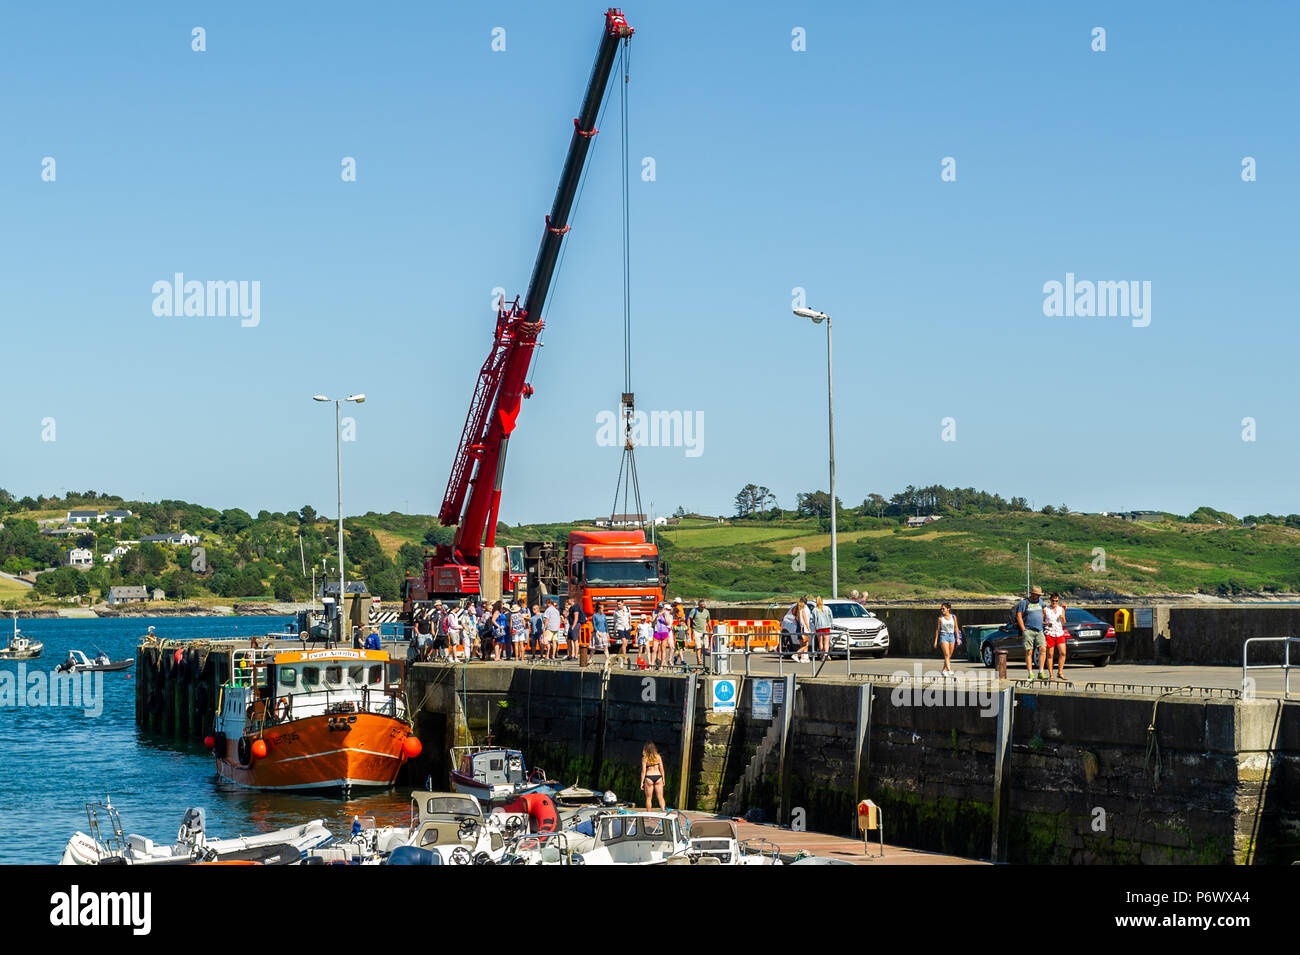 Schull, West Cork, Irlande. 3 juillet 2018. Les entrepreneurs lèvent une partie de la barge que les ouvriers utiliseront pour construire le nouveau ponton dans l'eau tandis que le ferry Cape Clear décharge ses passagers après un voyage sur l'île. Crédit : AG News/Alay Live News. Banque D'Images